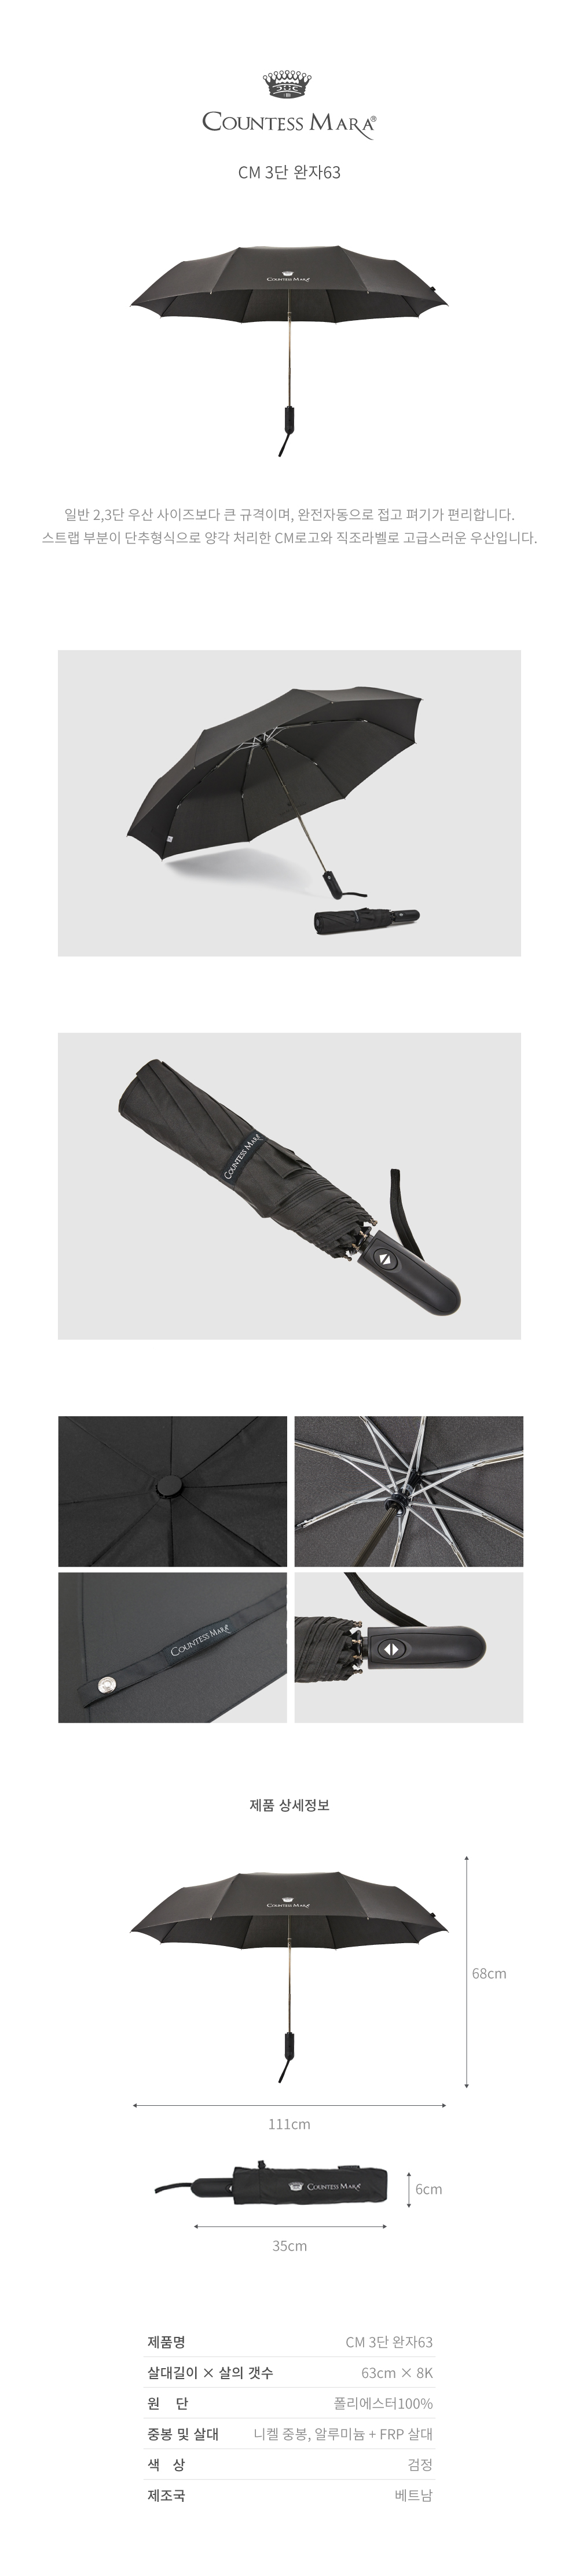 일반 2,3단 우산 사이즈보다 큰 규격이며, 완전자동으로 접고 펴기가 편리합니다. 스트랩 부분이 단추형식으로 양각 처리한 CM로고와 직조라벨로 고급스러운 우산입니다.